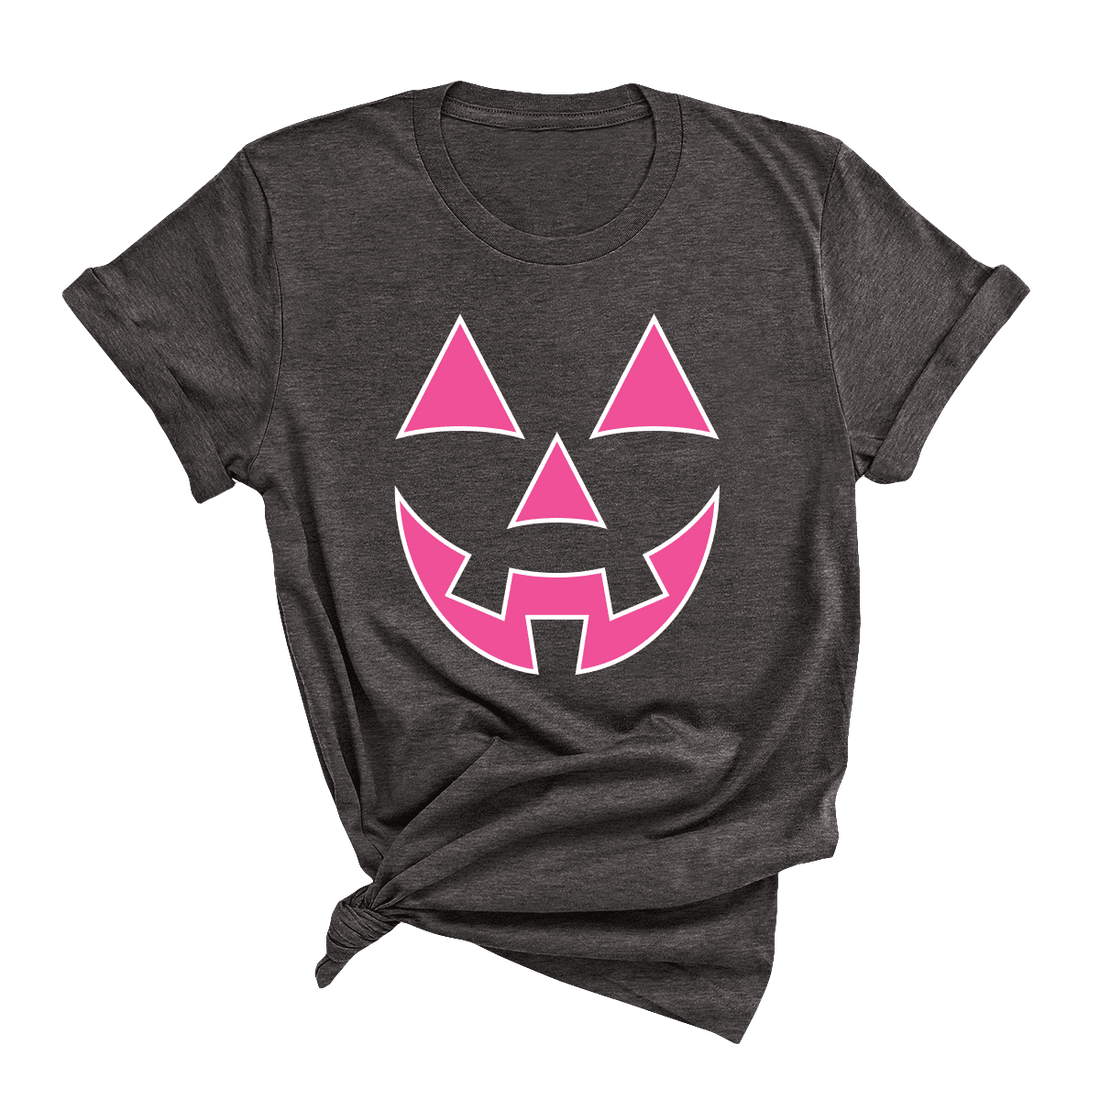 Hot Pink Jack-o-Lantern T-Shirt